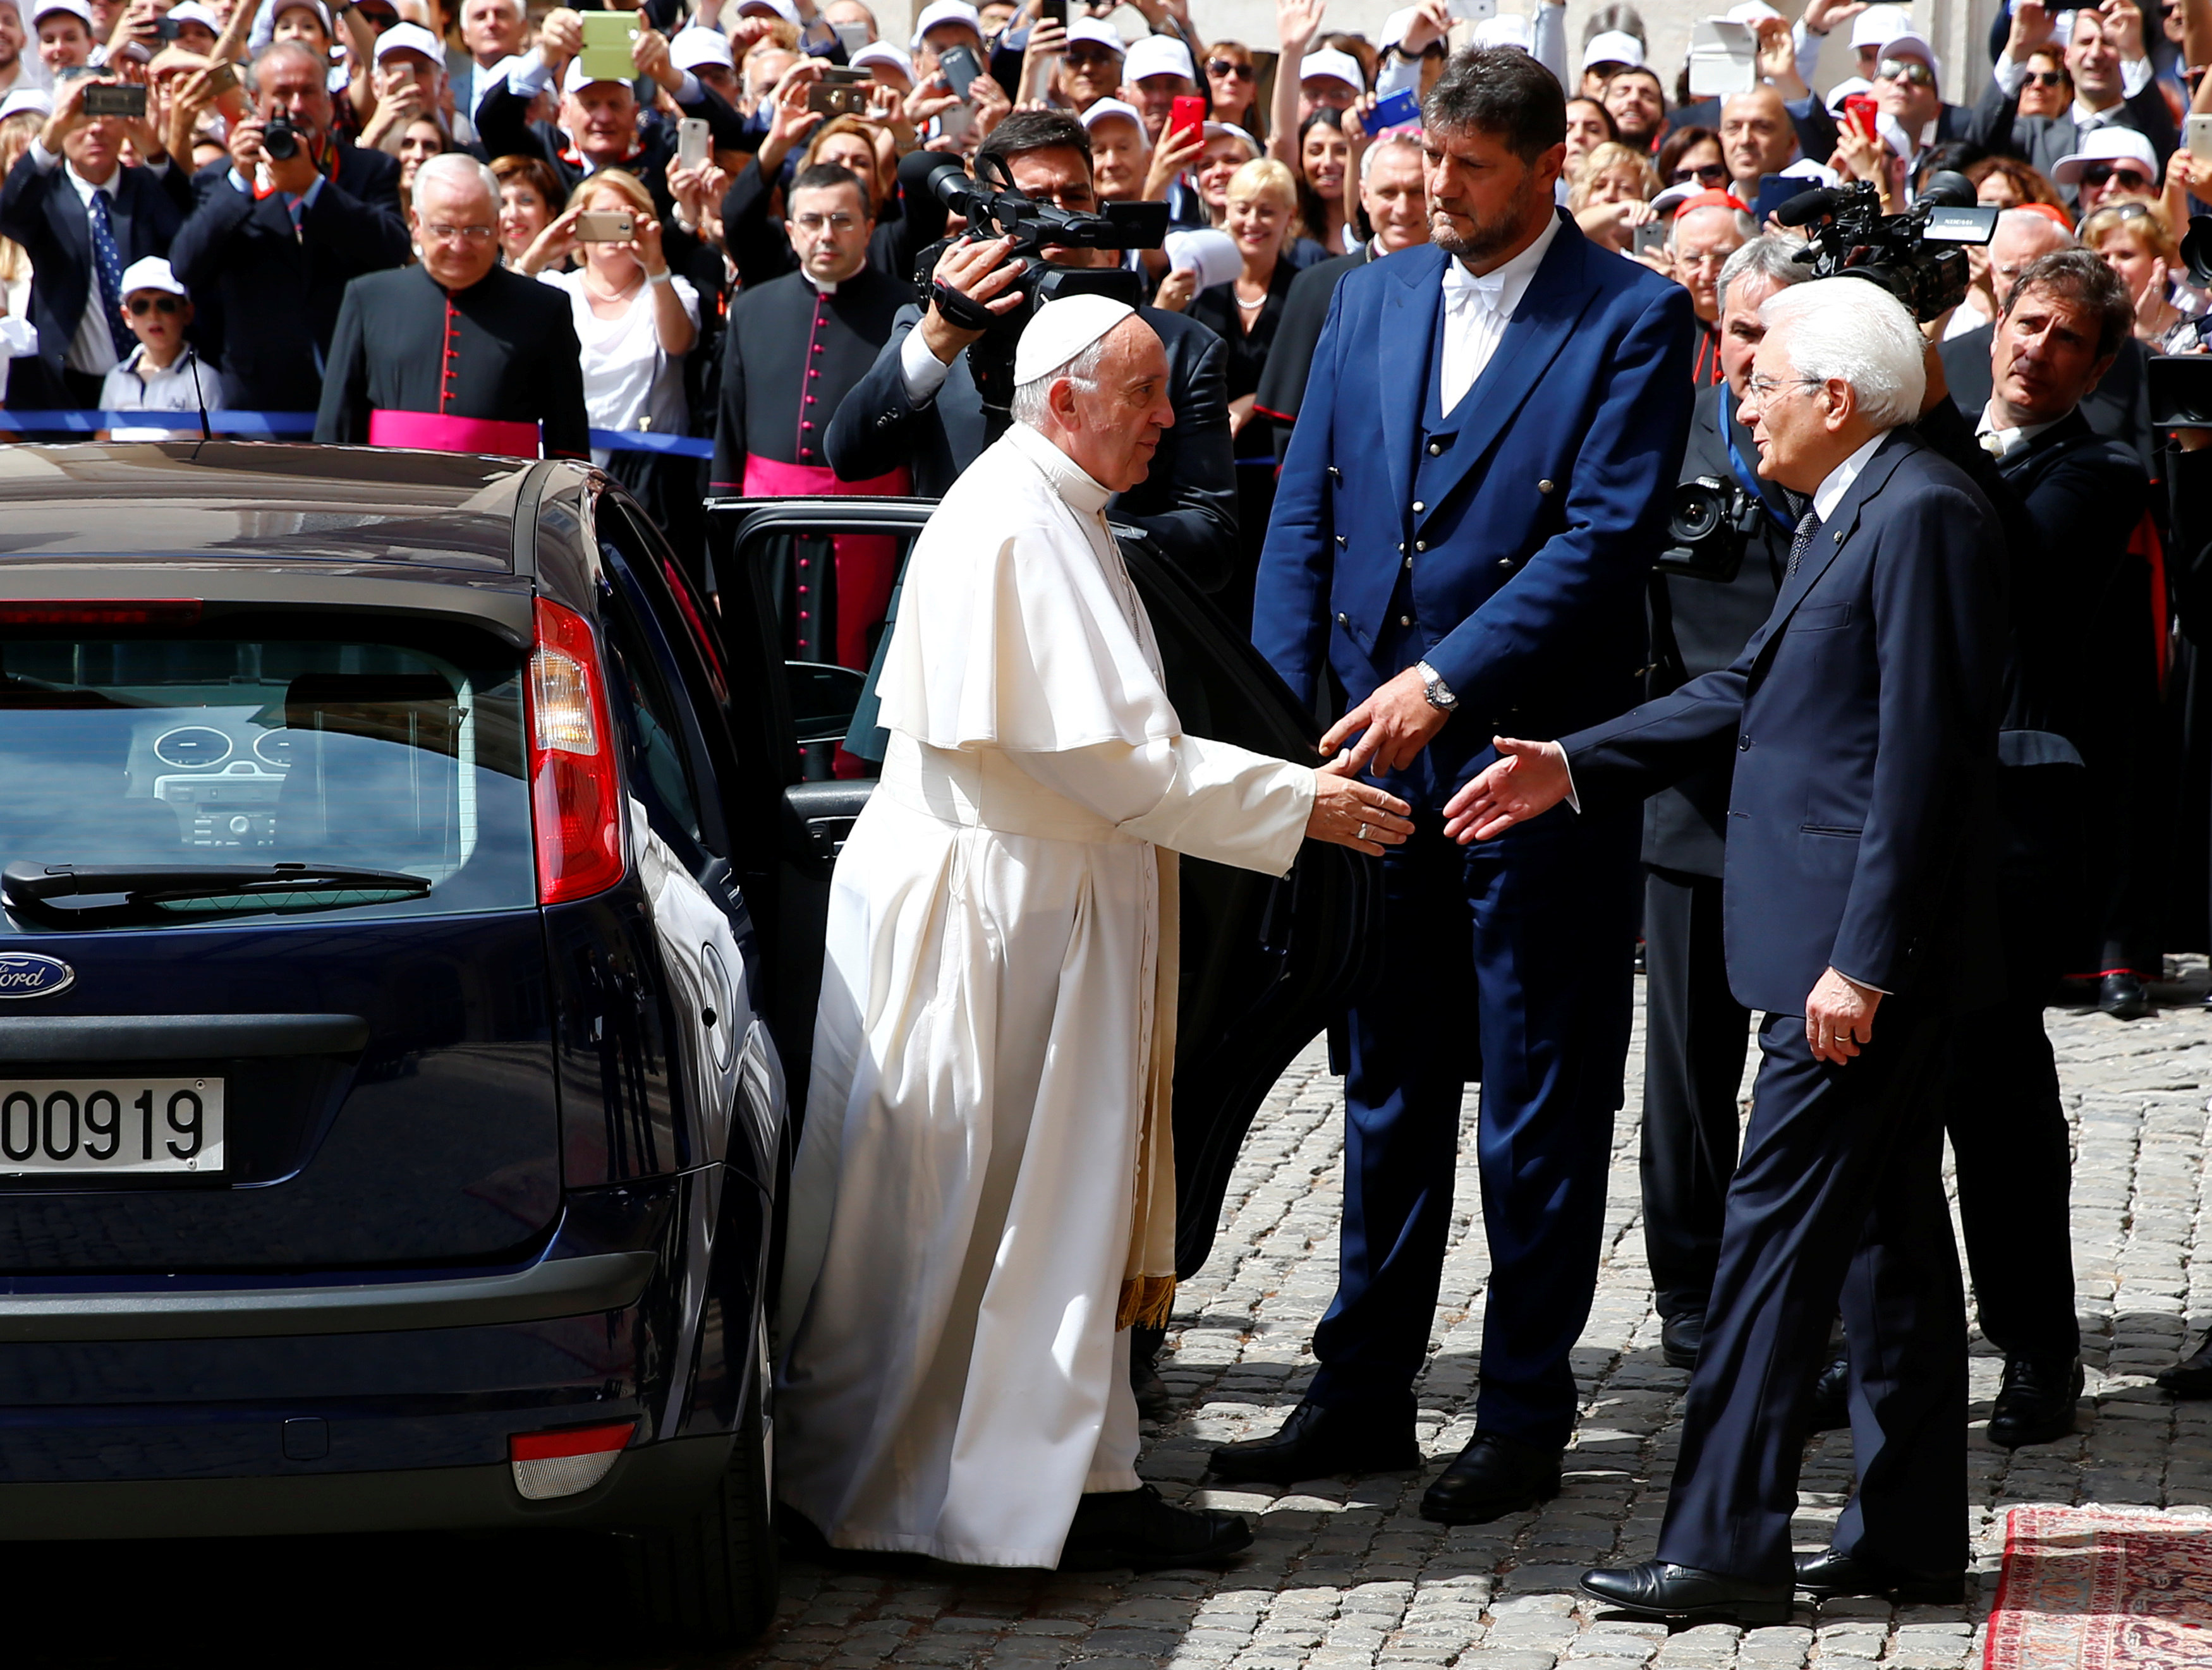 وصول البابا فرانسيس إلى قصر كيرينال فى روما